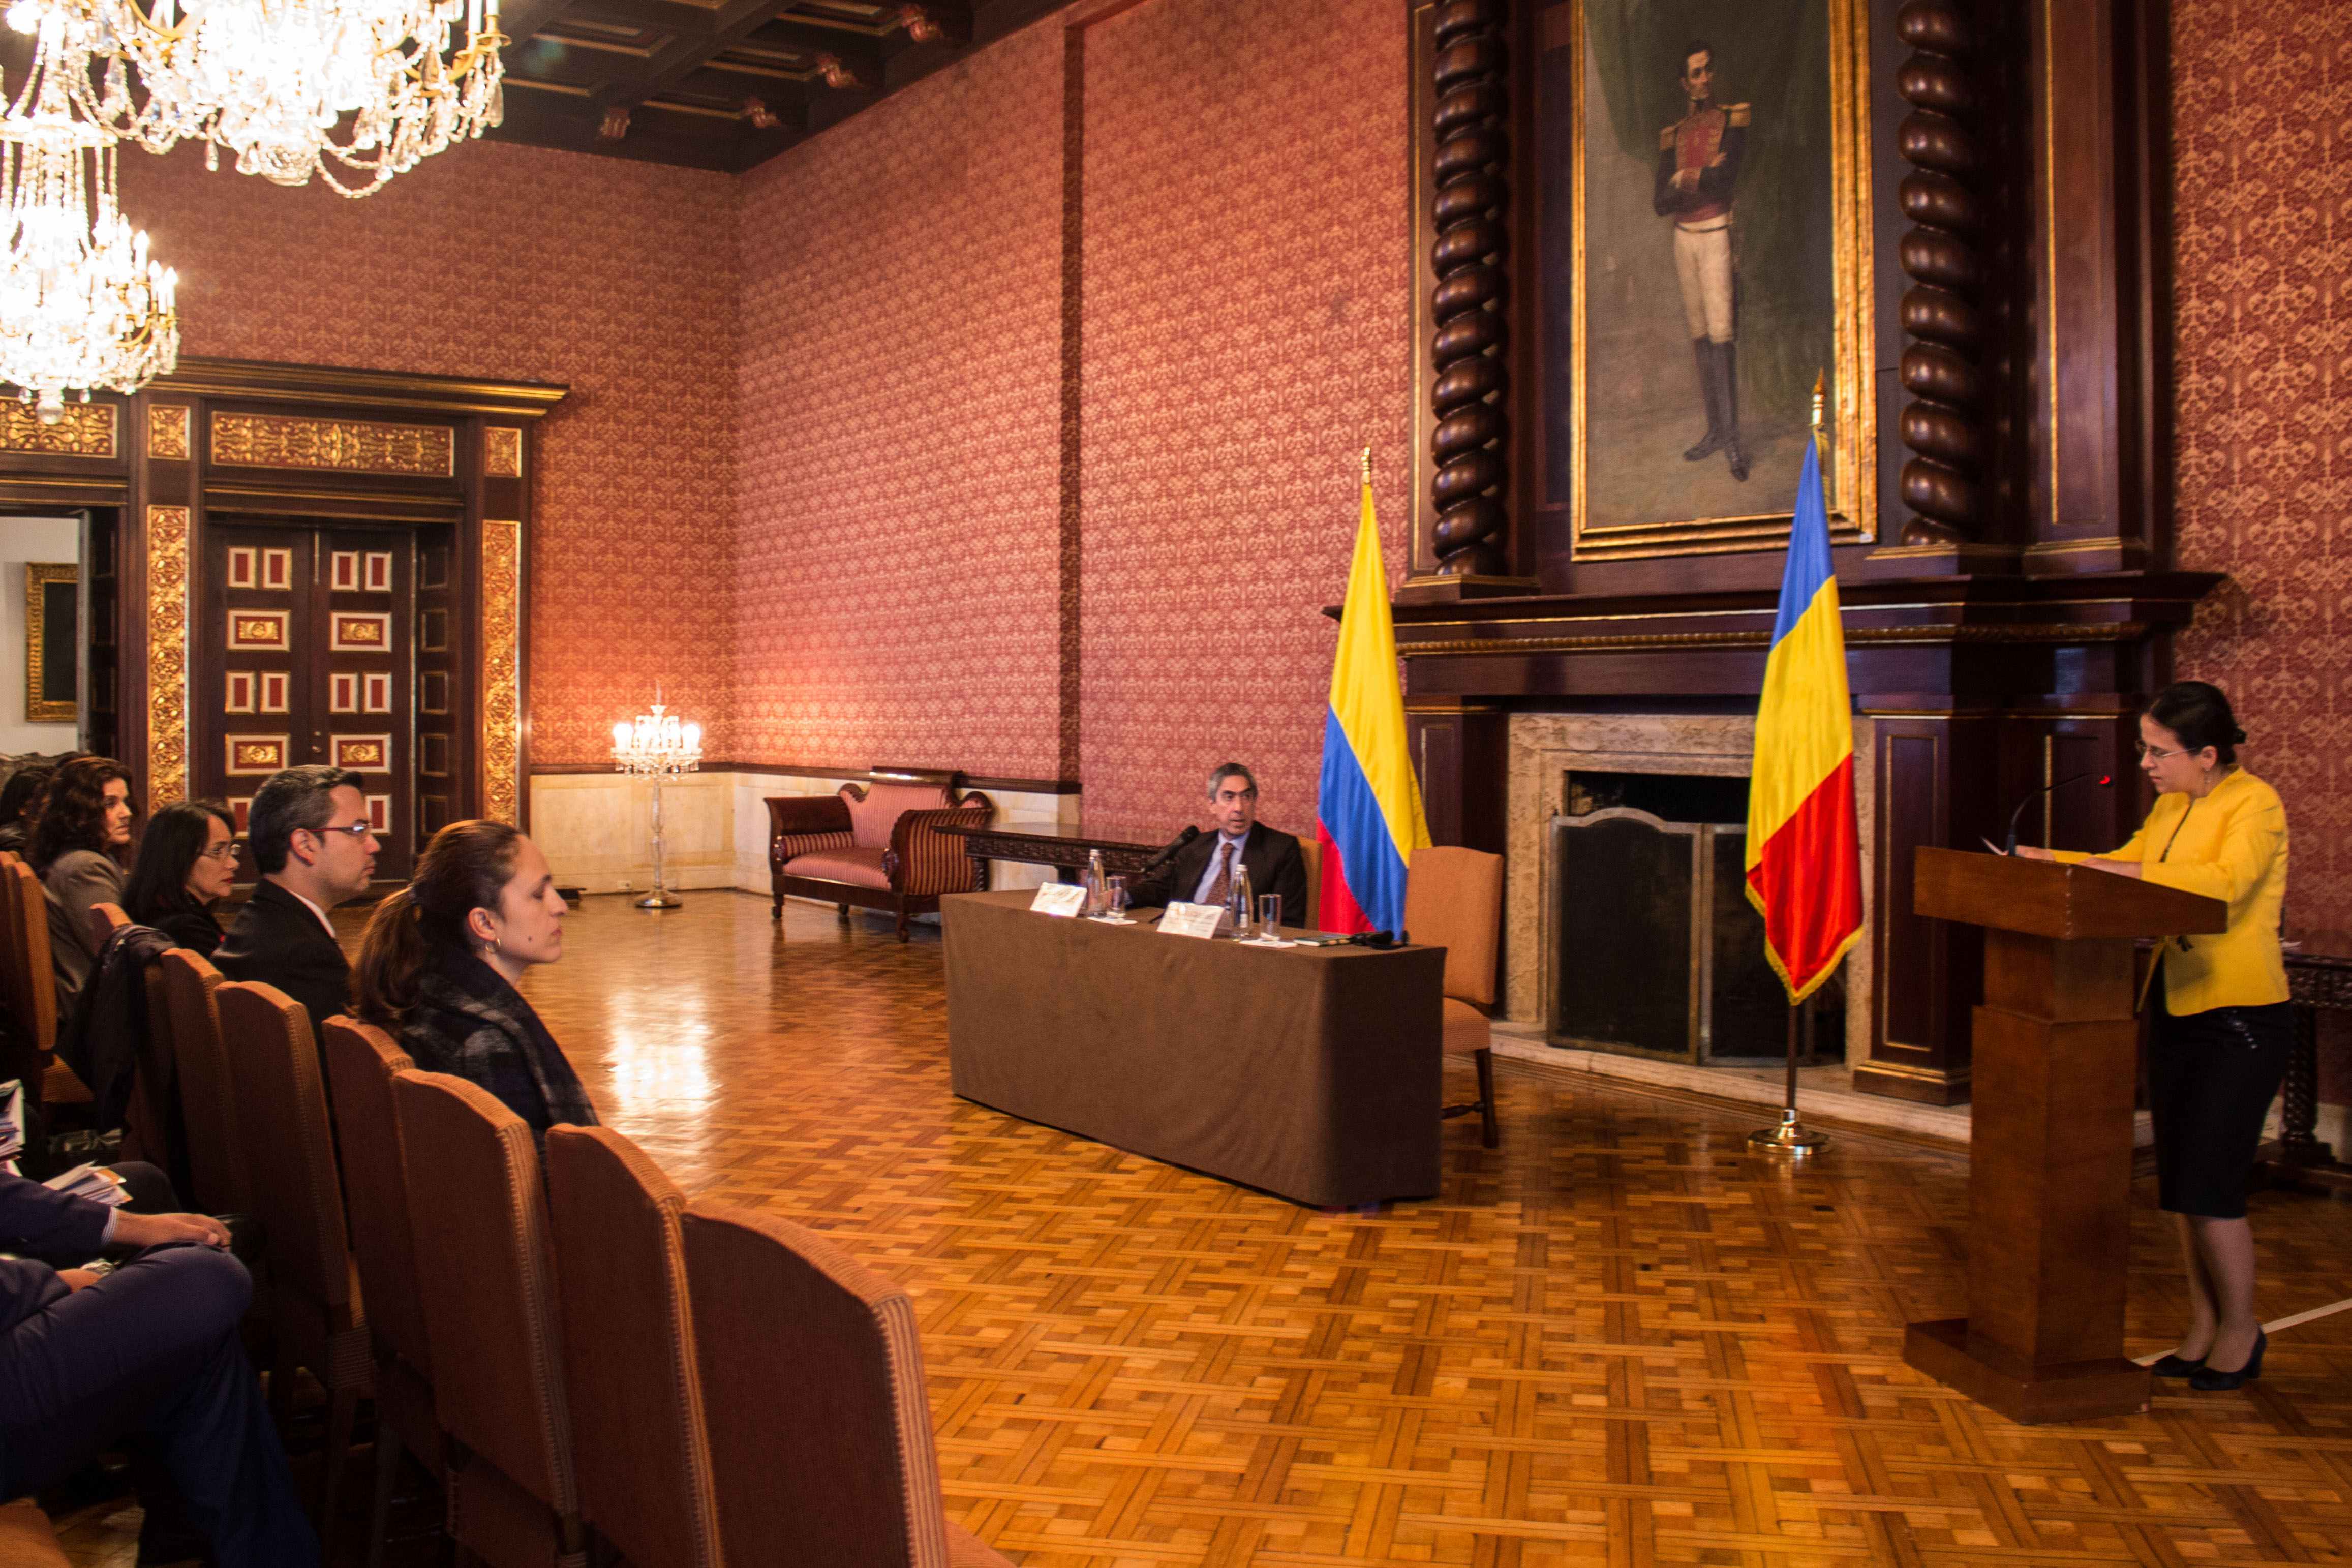 Viceministra de Asuntos Globales del Ministerio de Asuntos Exteriores de Rumania ofreció conferencia sobre la política exterior de su país y las relaciones con Colombia.